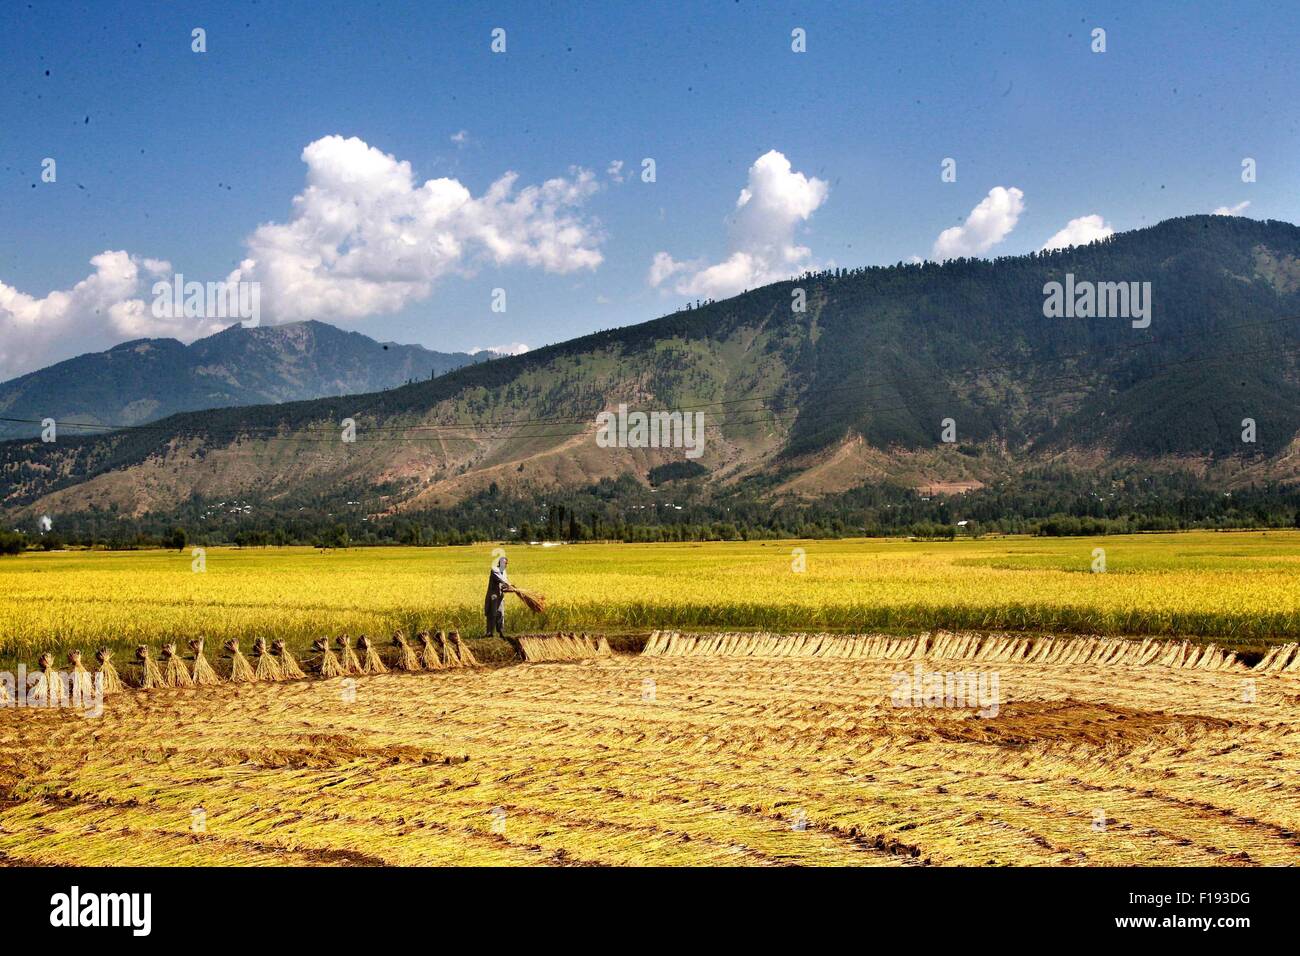 Srinagar, Indiano-controllato del Kashmir. Il 30 agosto, 2015. Un agricoltore del Kashmir funziona in un campo di risone al villaggio Dewar in Lolab area del distretto di Kupwara, circa 115 km a nord di Srinagar, capitale estiva di Indiano-Kashmir controllato, il 30 agosto 2015. Paddy stagione di raccolto ha iniziato in indiano-Kashmir controllata. Il riso è l'alimento base della valle del Kashmir. Credito: Javed Dar/Xinhua/Alamy Live News Foto Stock